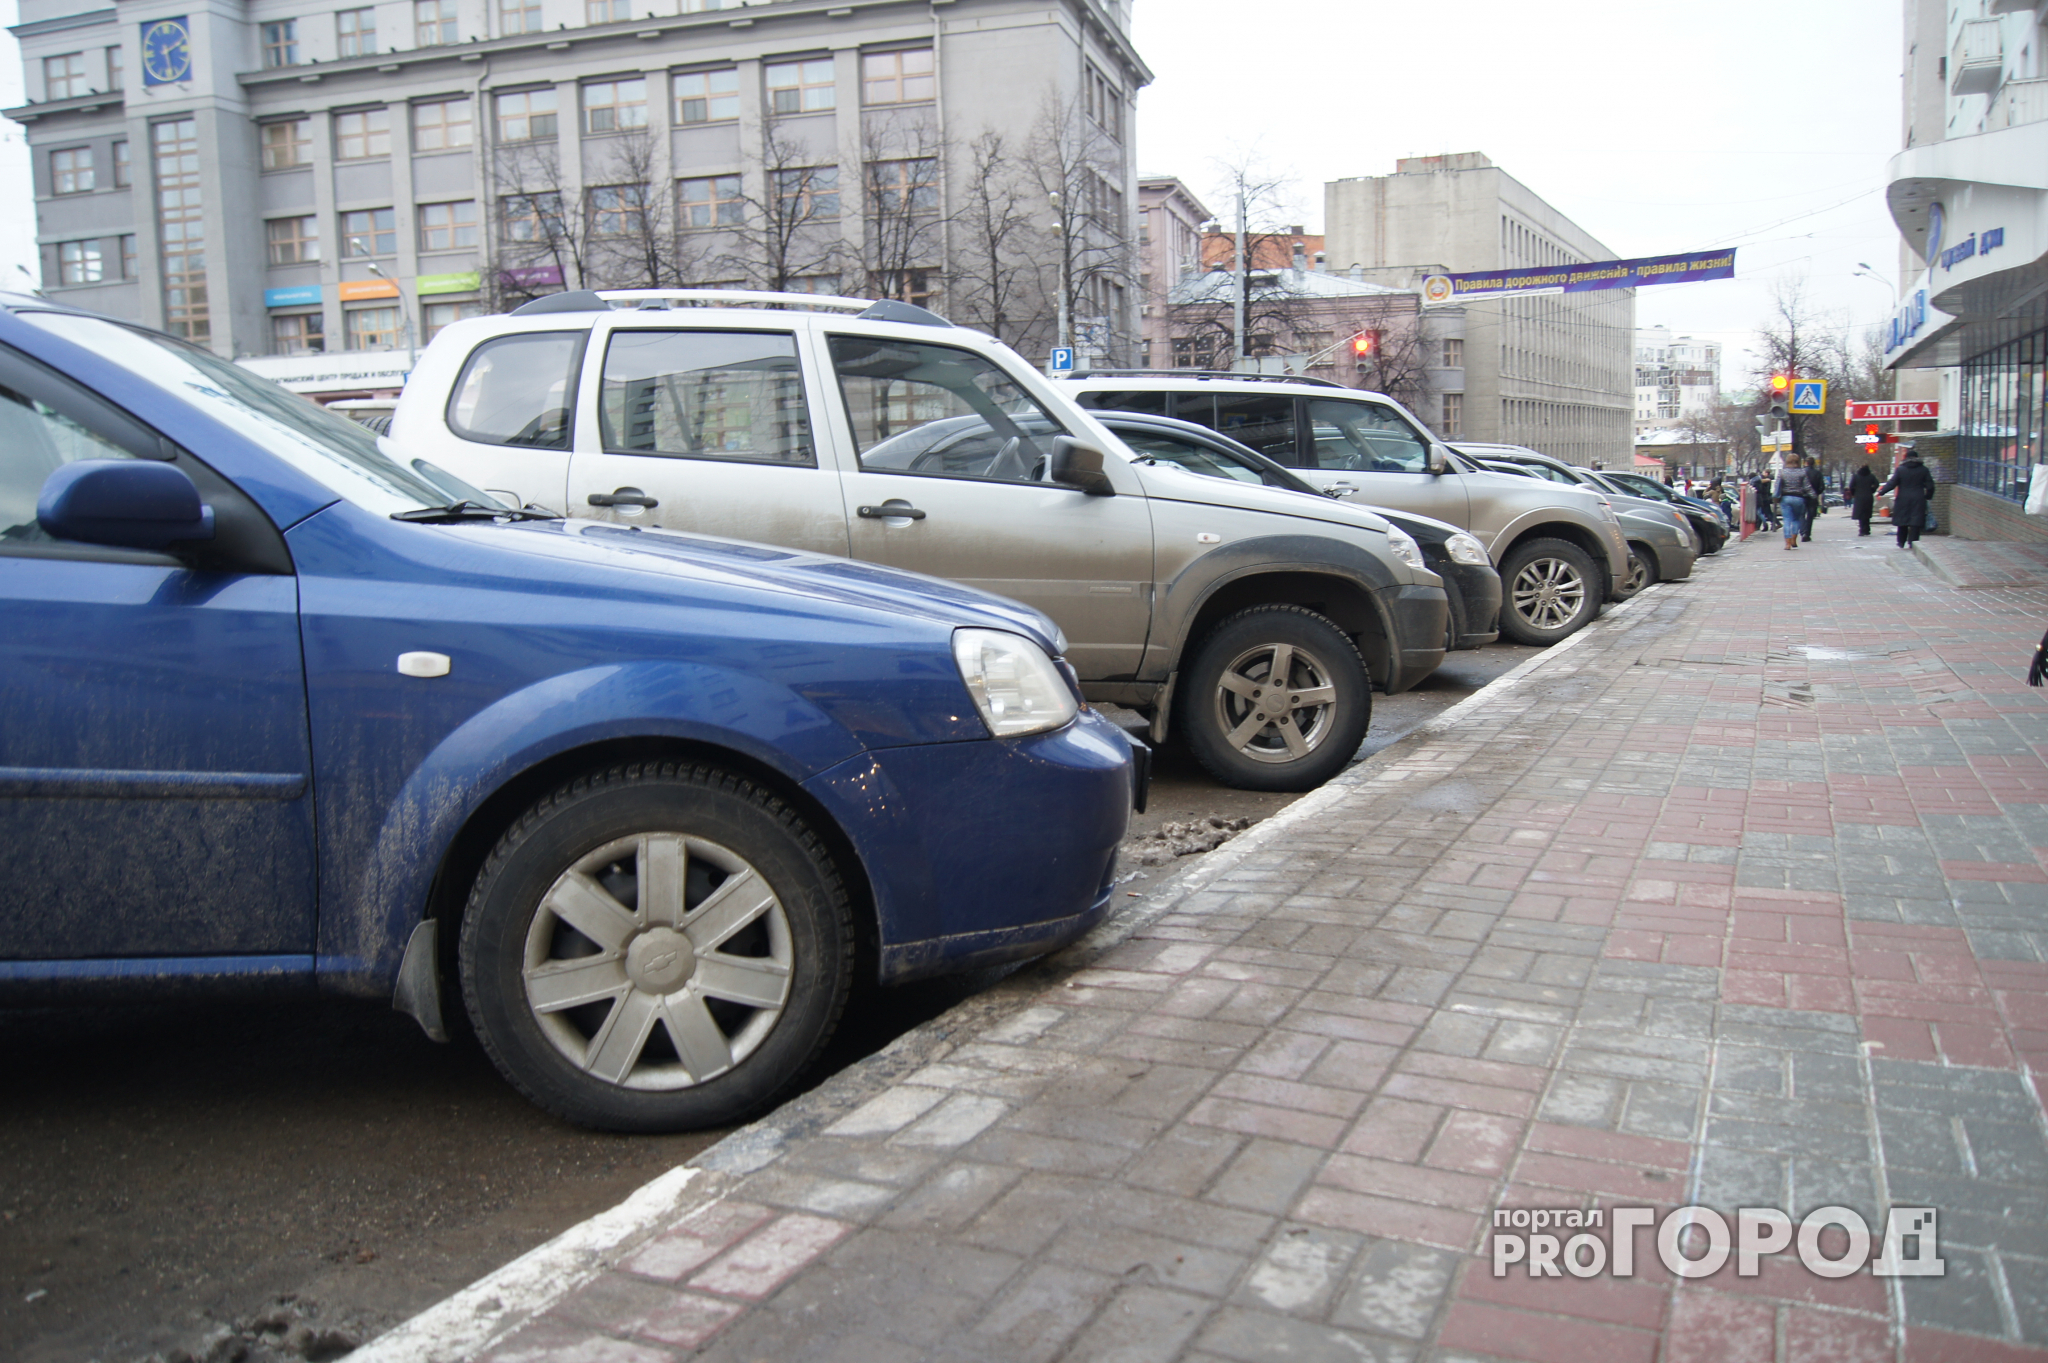 Опубликован полный перечень платных парковок, которые откроются в Нижнем Новгороде